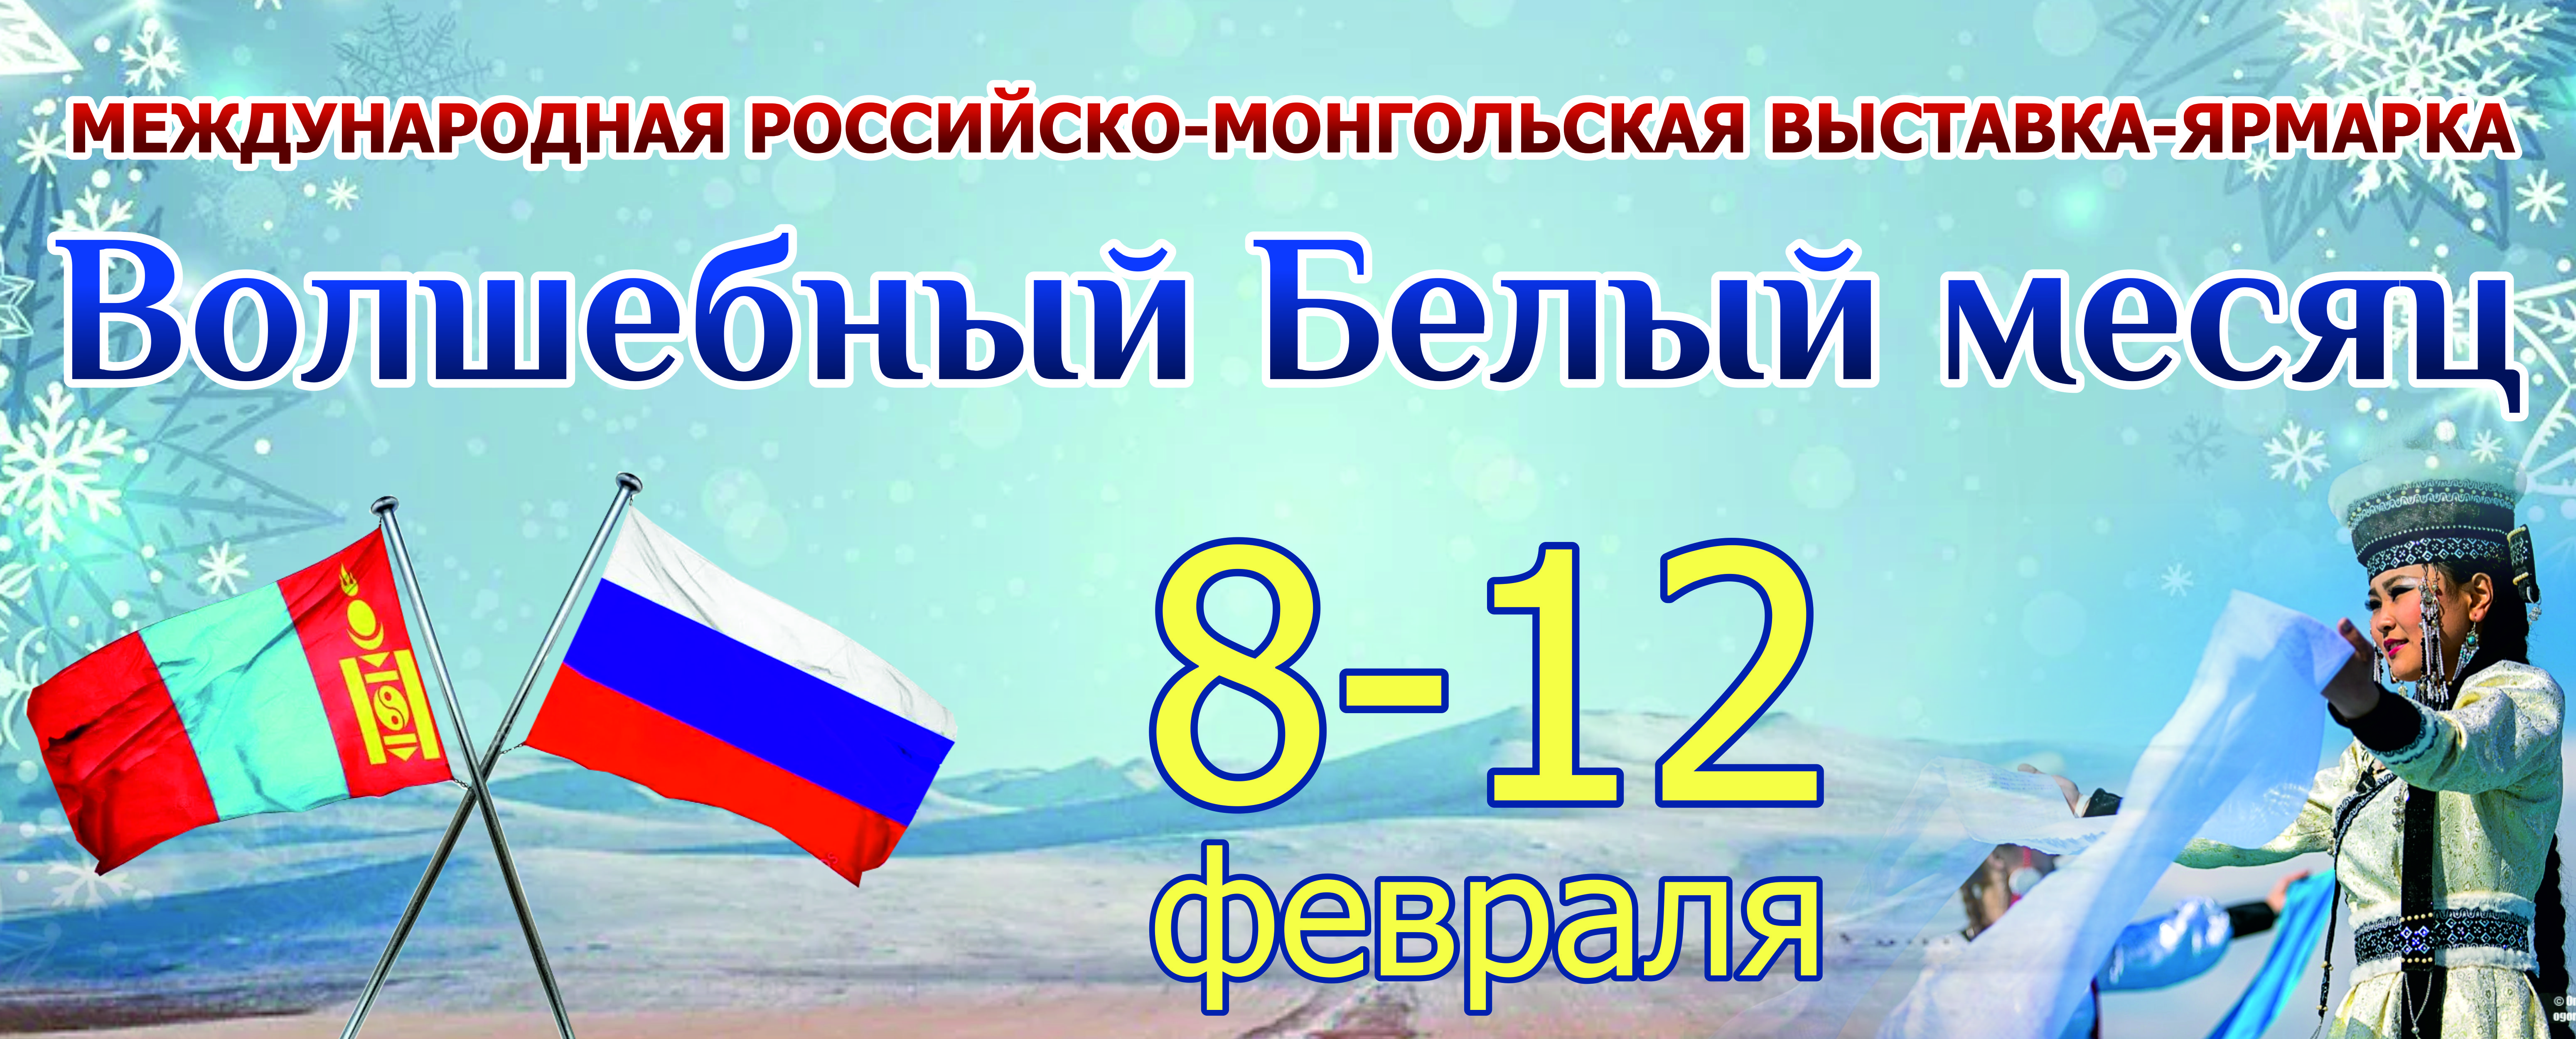 Международная Российско-Монгольская выставка-ярмарка 